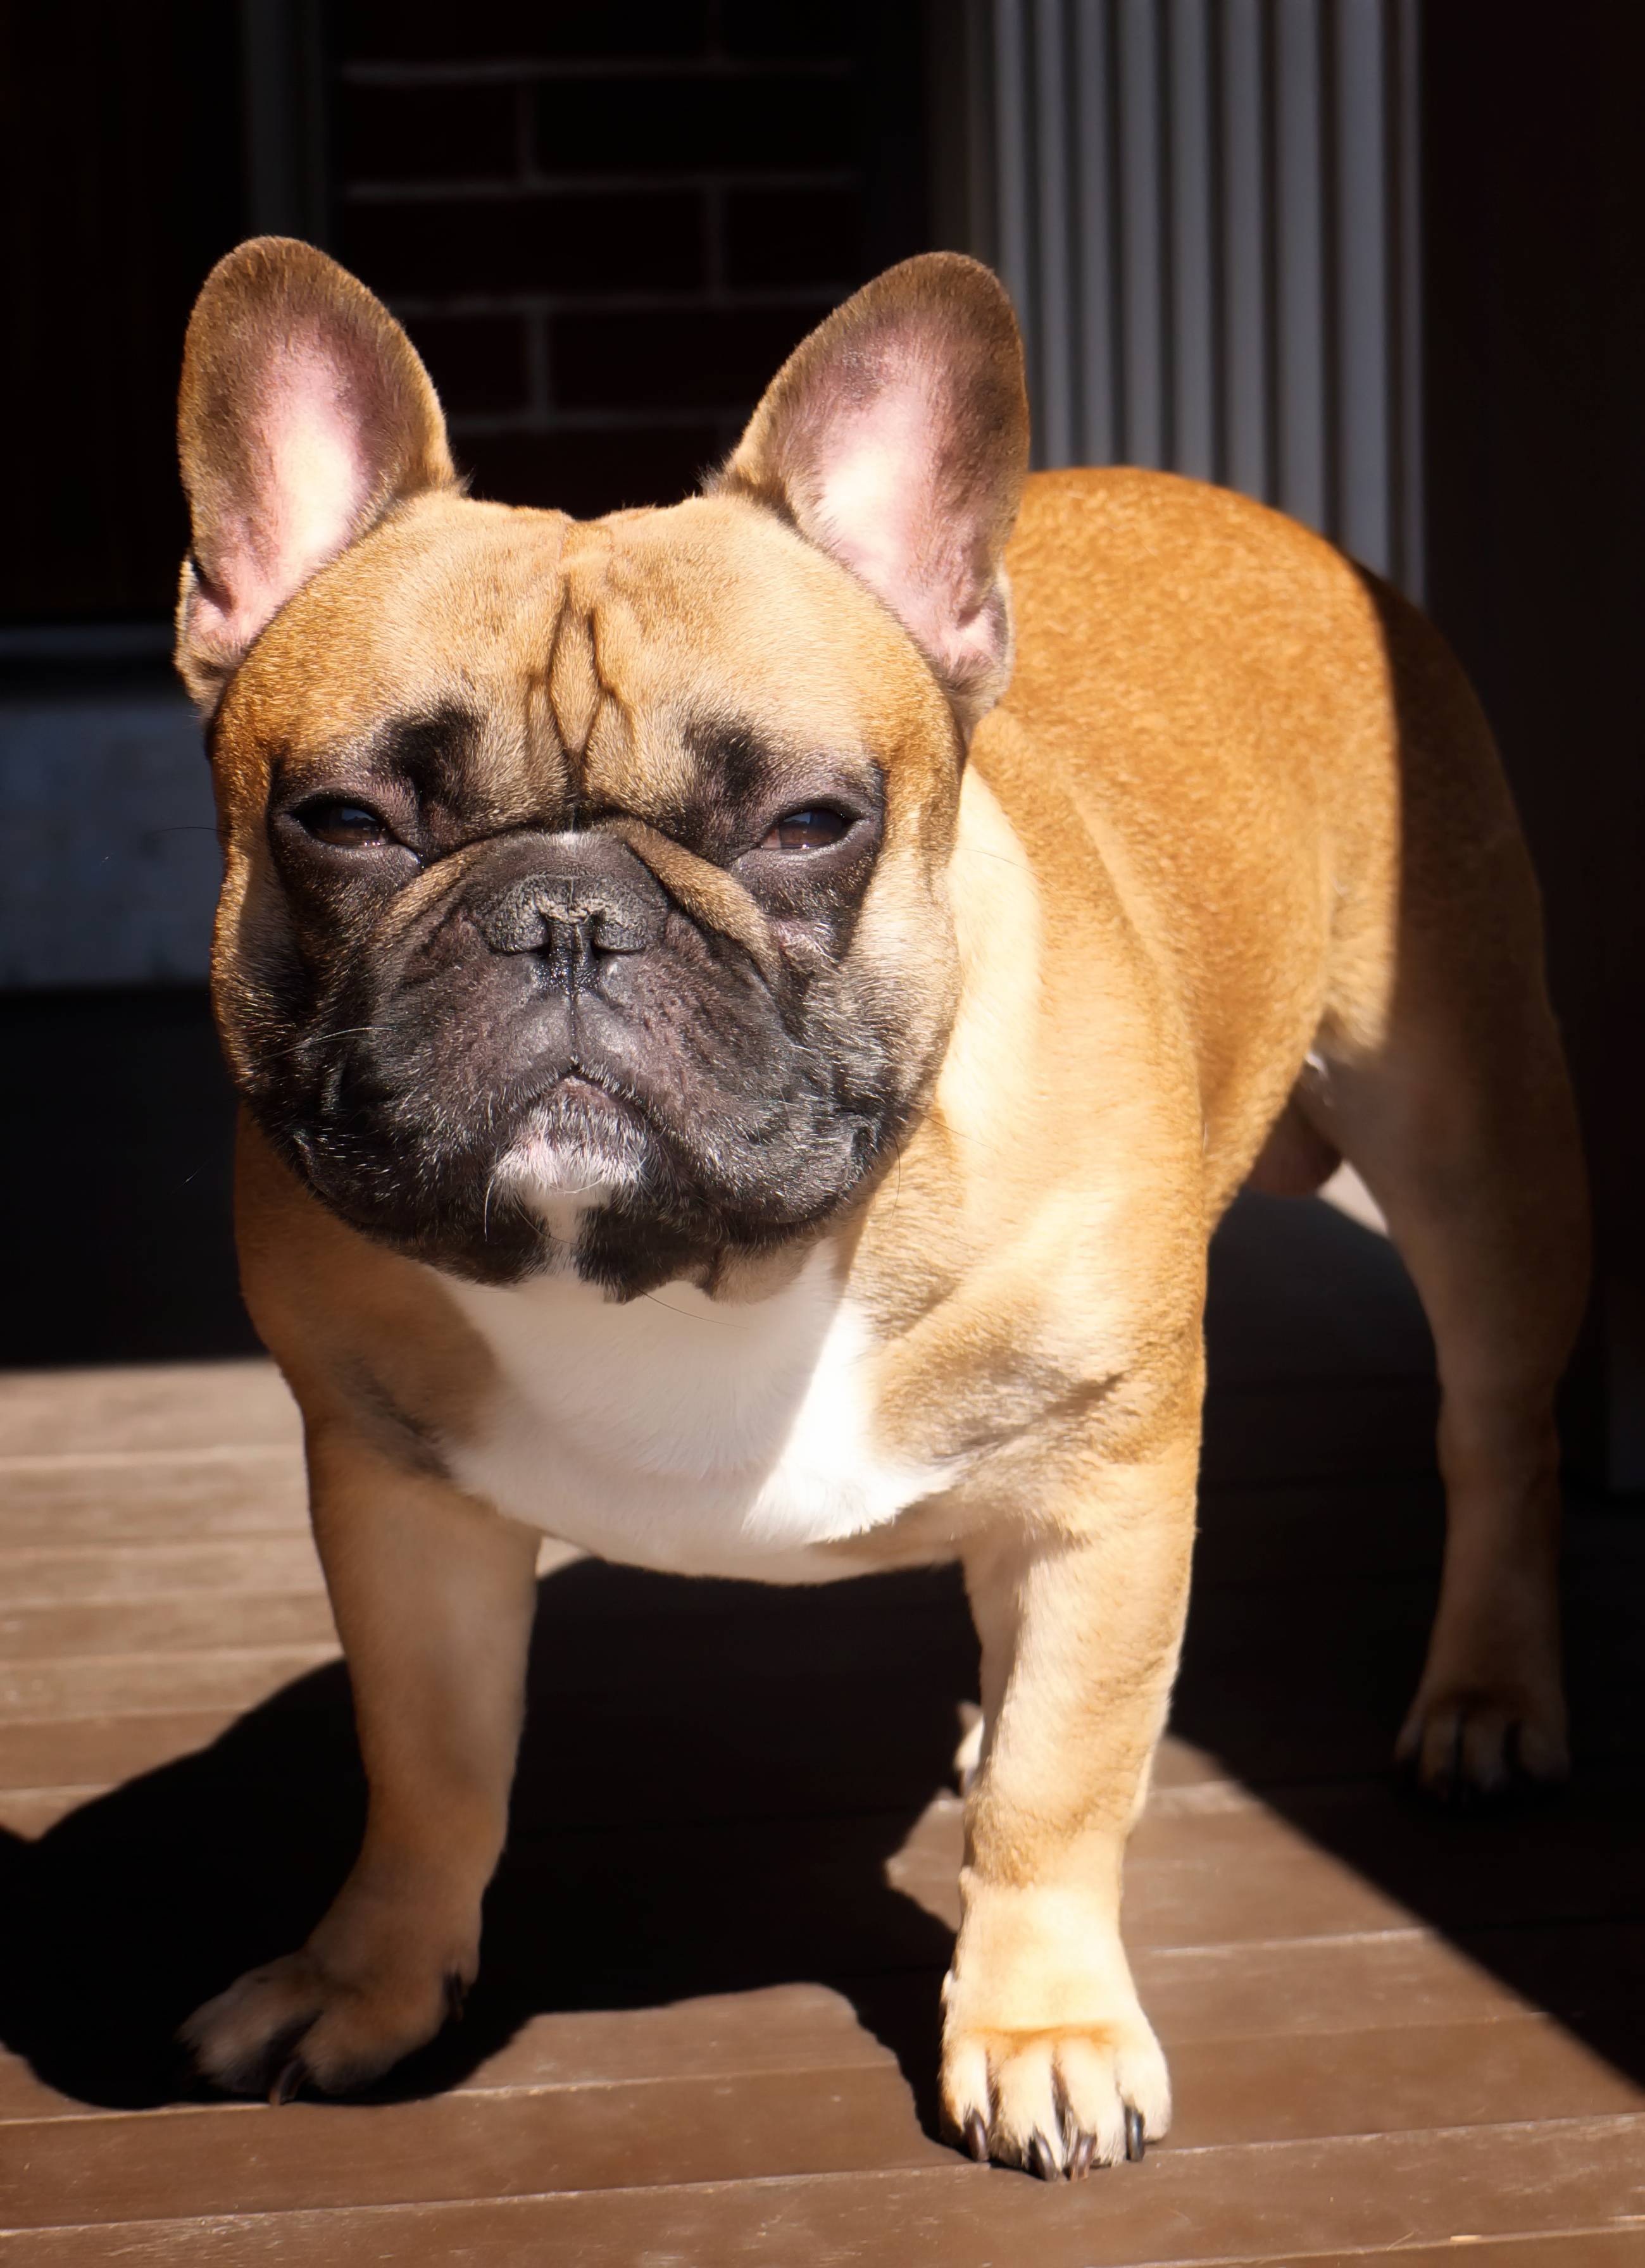 Английский бульдог: все о собаке, фото, описание породы, характер, цена